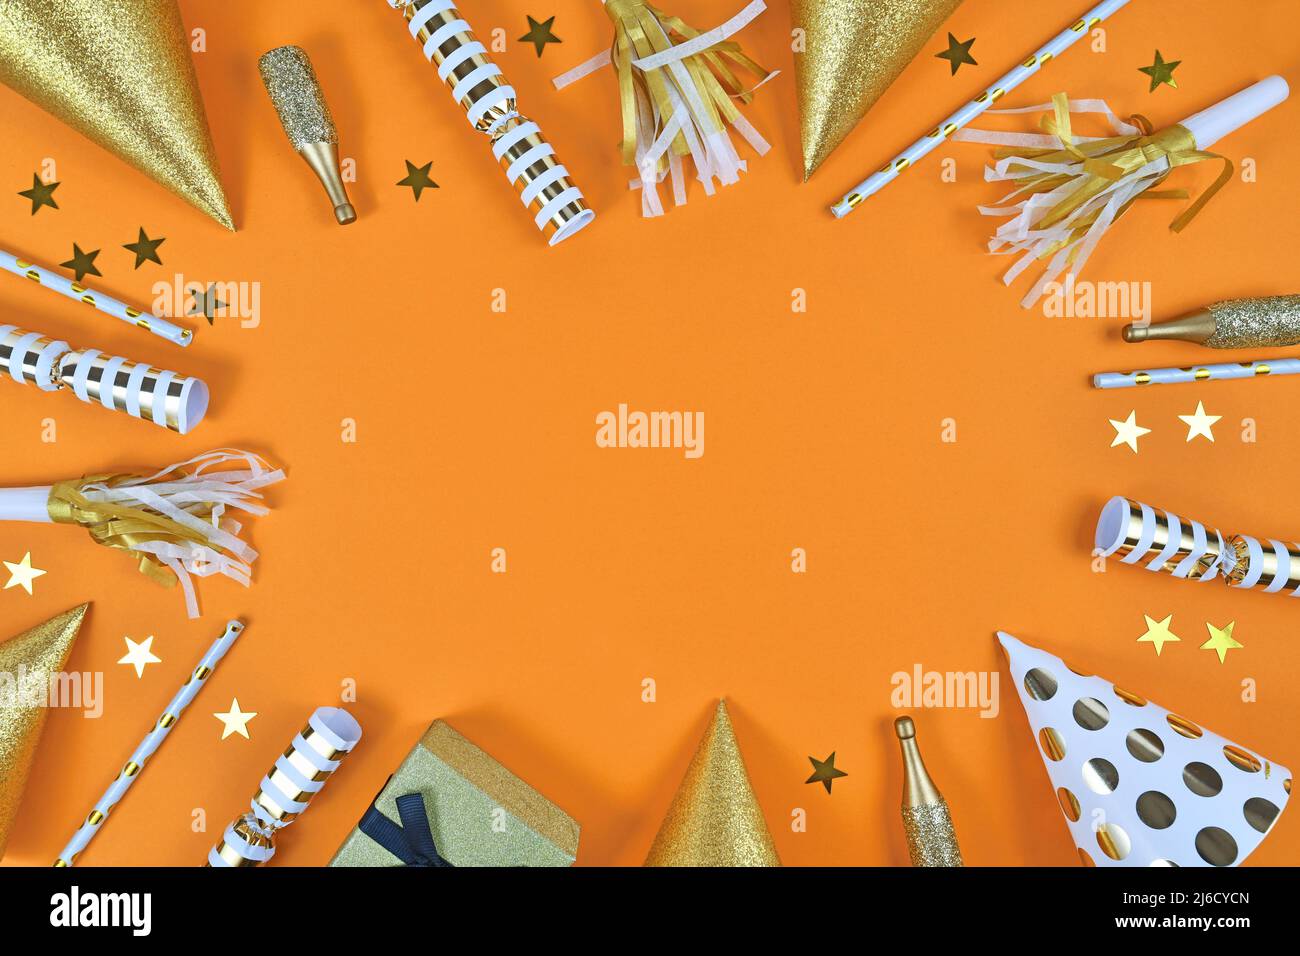 Partyobjekte wie Papierhüte, Konfetti, goldene Champagnerflaschen und Sternkonfetti bilden den Rahmen um den orangefarbenen Hintergrund Stockfoto